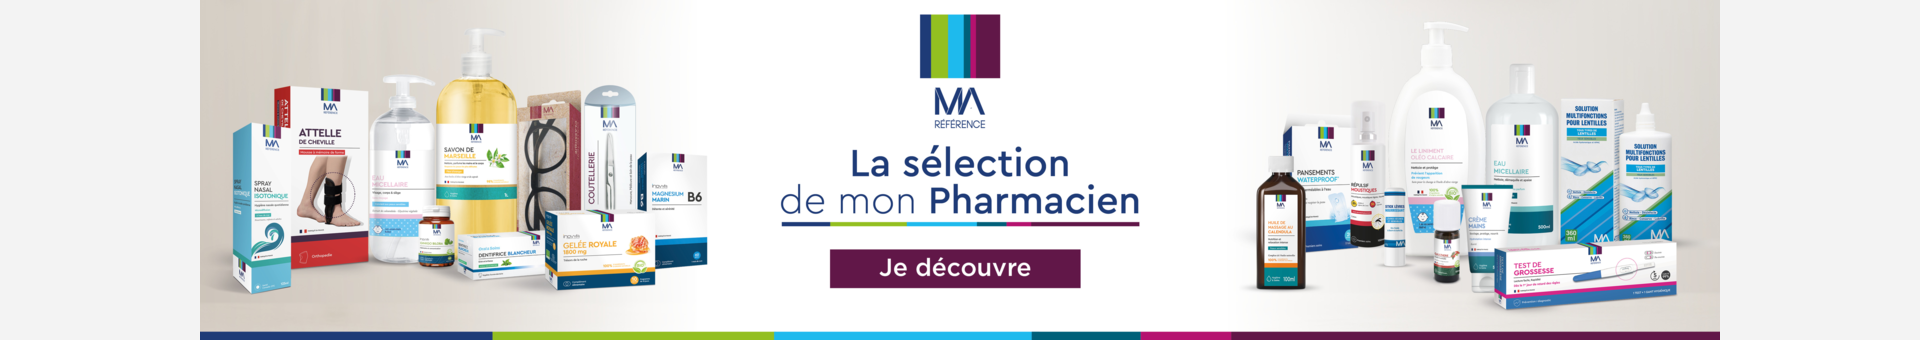 Pharmacie Carré Sénart - Parapharmacie Love & Green Couches  Hypoallergéniques T2 (3-6kg) Paquet/44 - LIEUSAINT